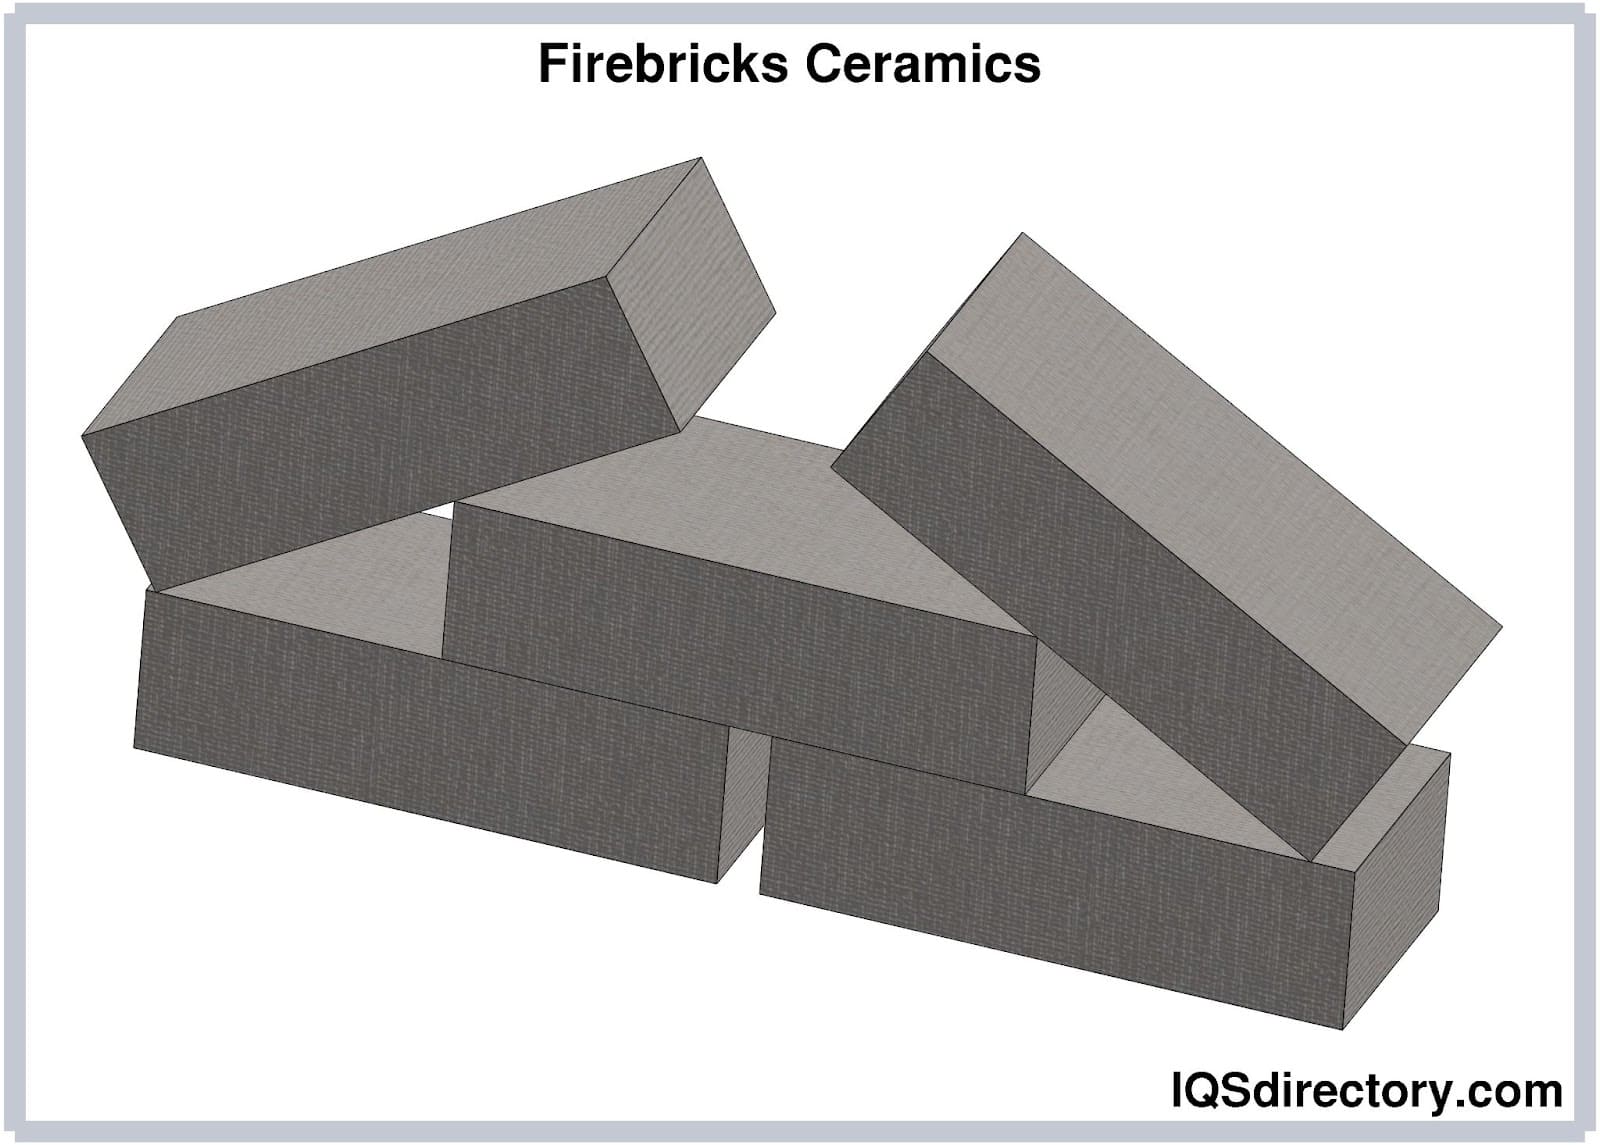 Firebricks Ceramics